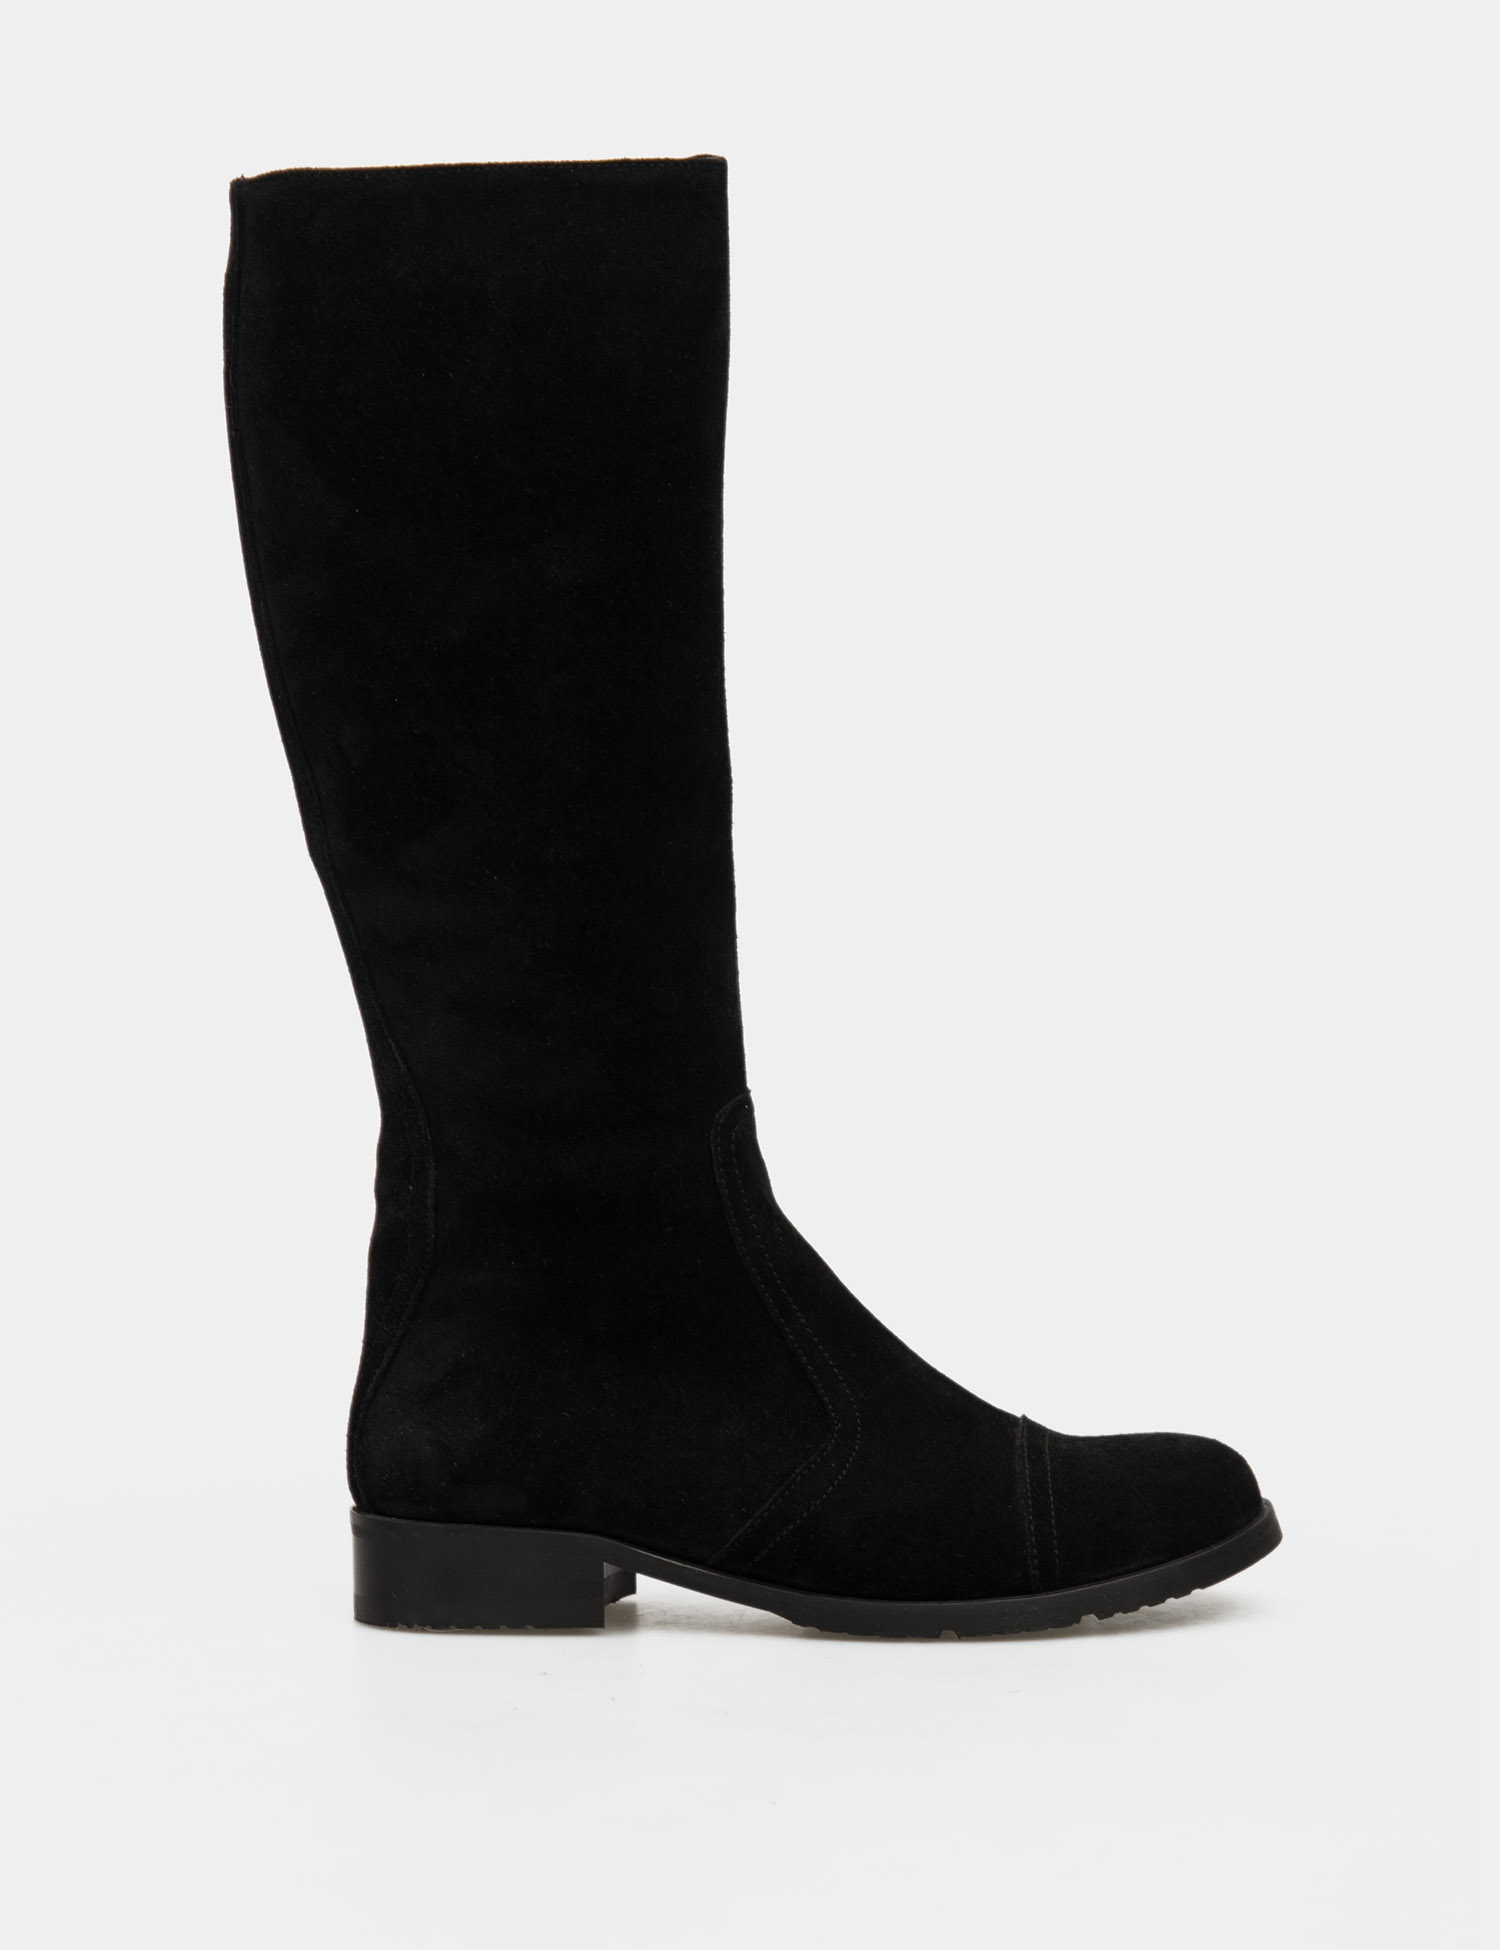 Картинка Жіночі чорні замшеві чоботи